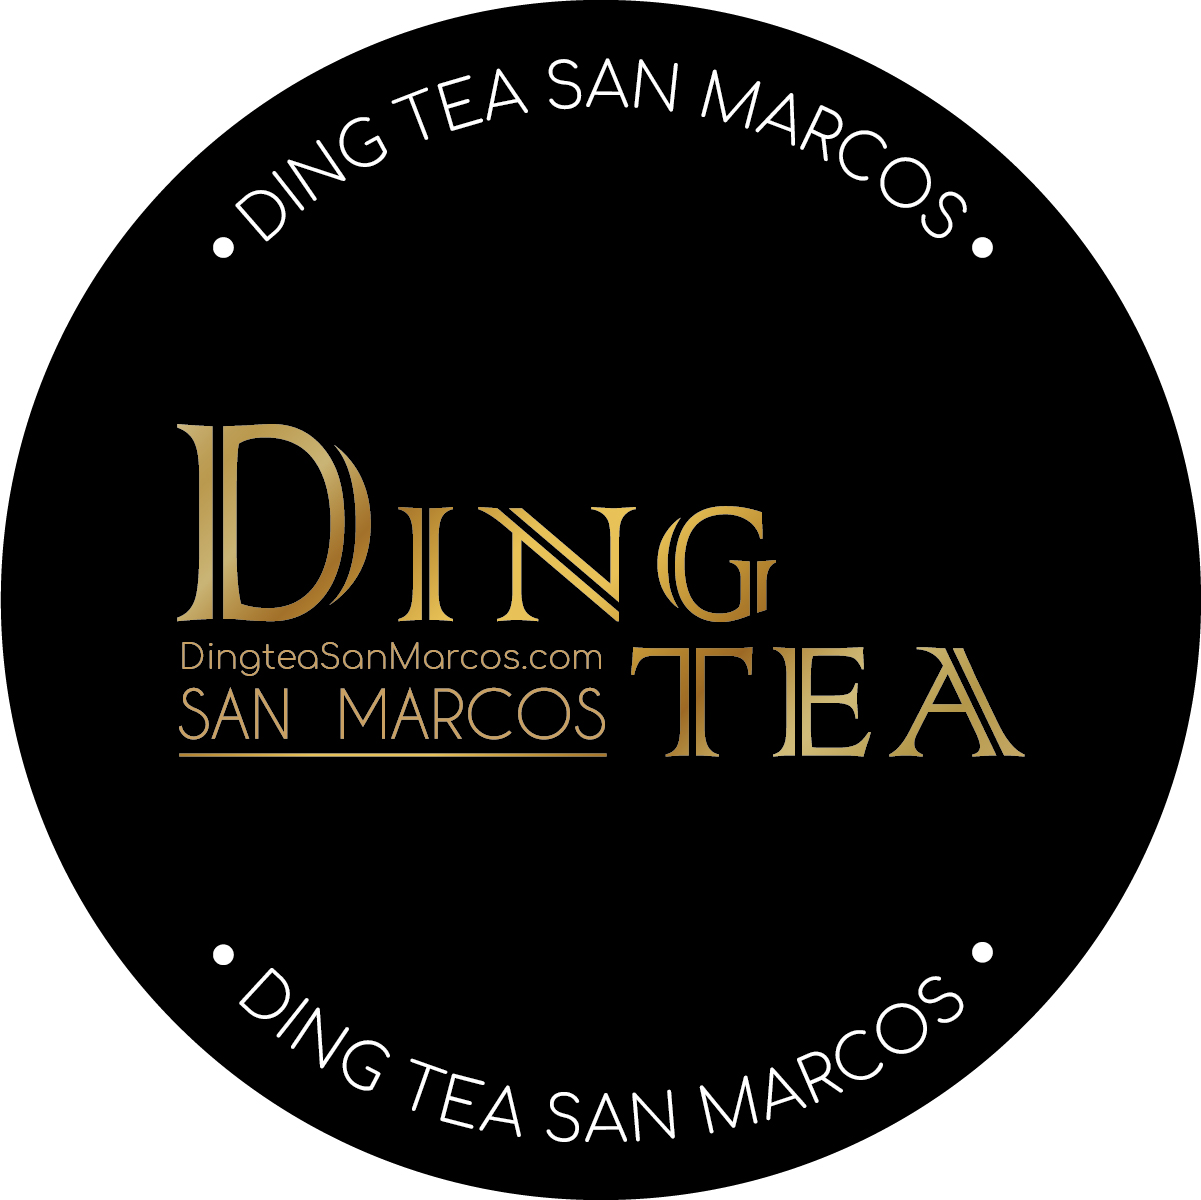 Ding Tea San Marcos